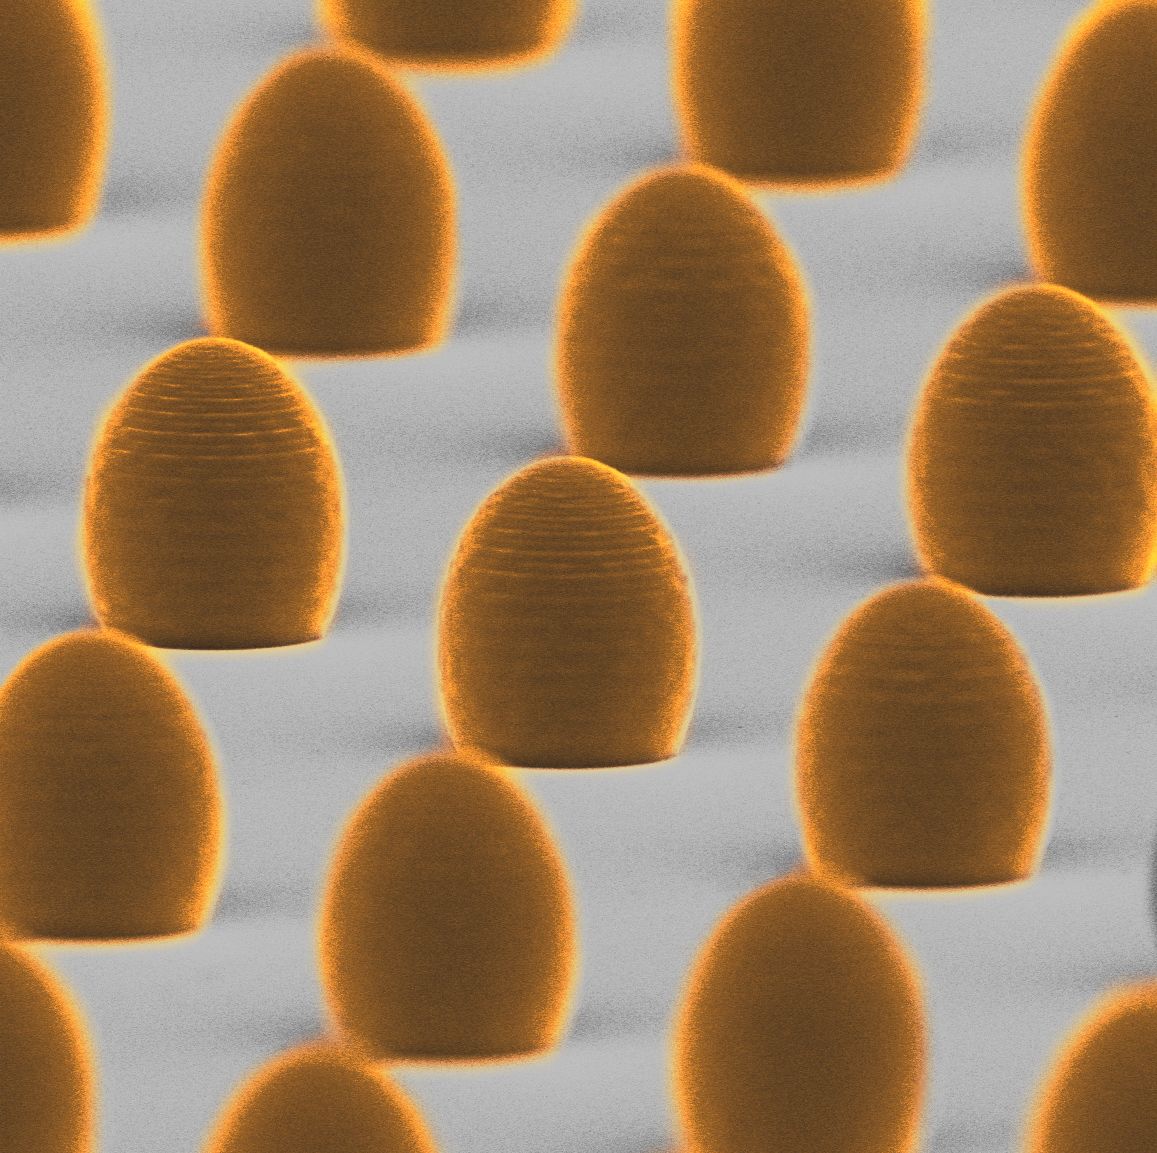 Asferyczne mikrosoczewki wydrukowane na laserowej drukarce 3D - zdjęcie z mikroskopu elektronowego. Średnica każdej z soczewek wynosi 15 mikrometrów, czyli około jednej piątej grubości ludzkiego włosa. Dzięki wysokiej wydajności druku 3D można w krótkim czasie wyprodukować setki mikrosoczewek na jednym podłożu.